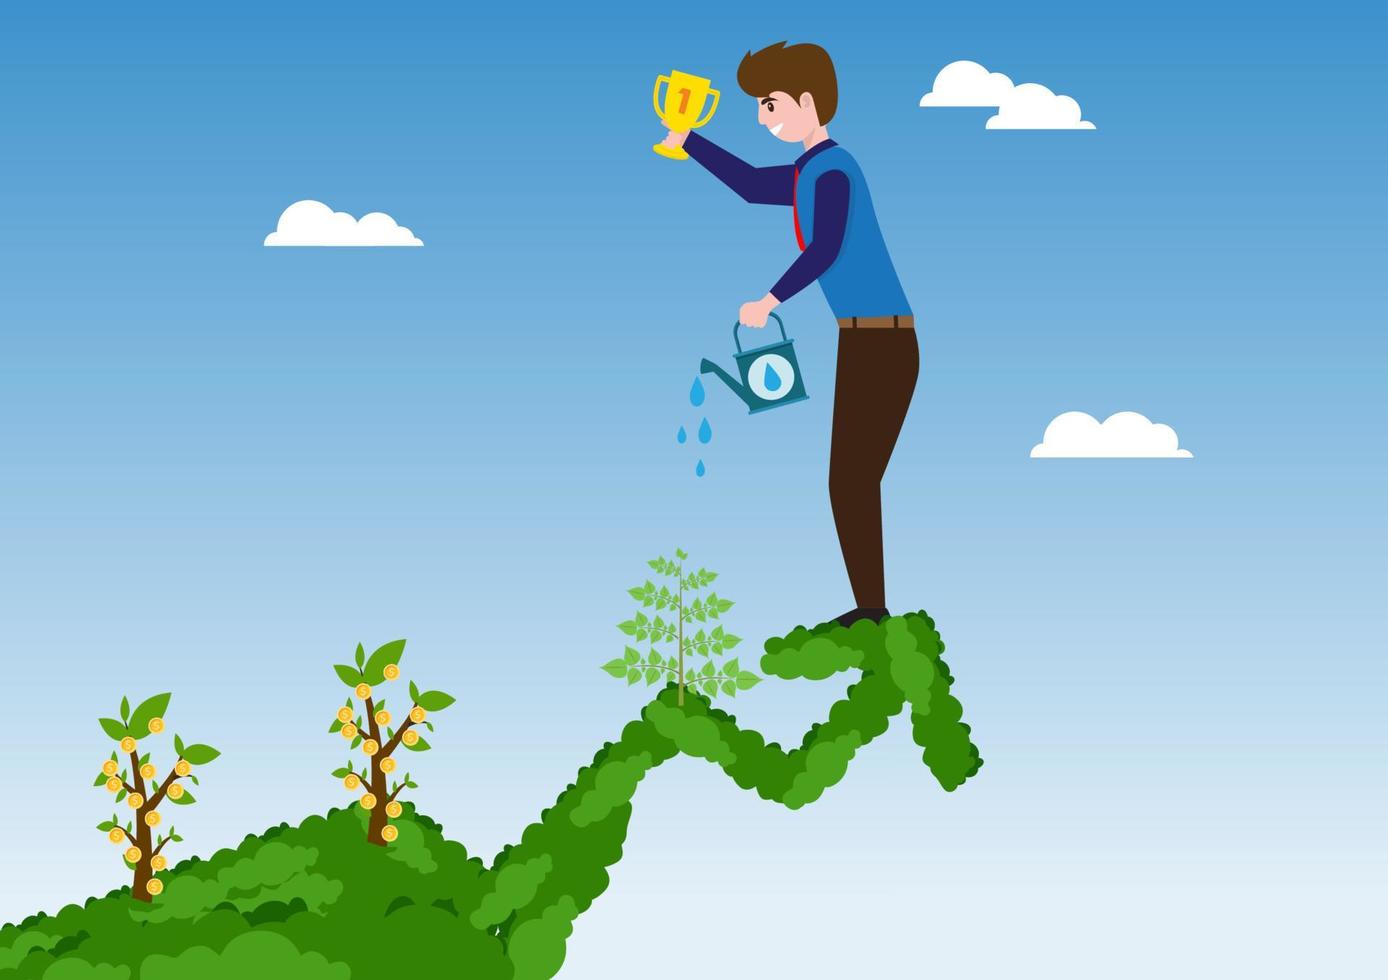 il personaggio maschile sta innaffiando le piante e osservando la crescita dell'investimento. con il trofeo del successo piatto fumetto illustrazione vettoriale